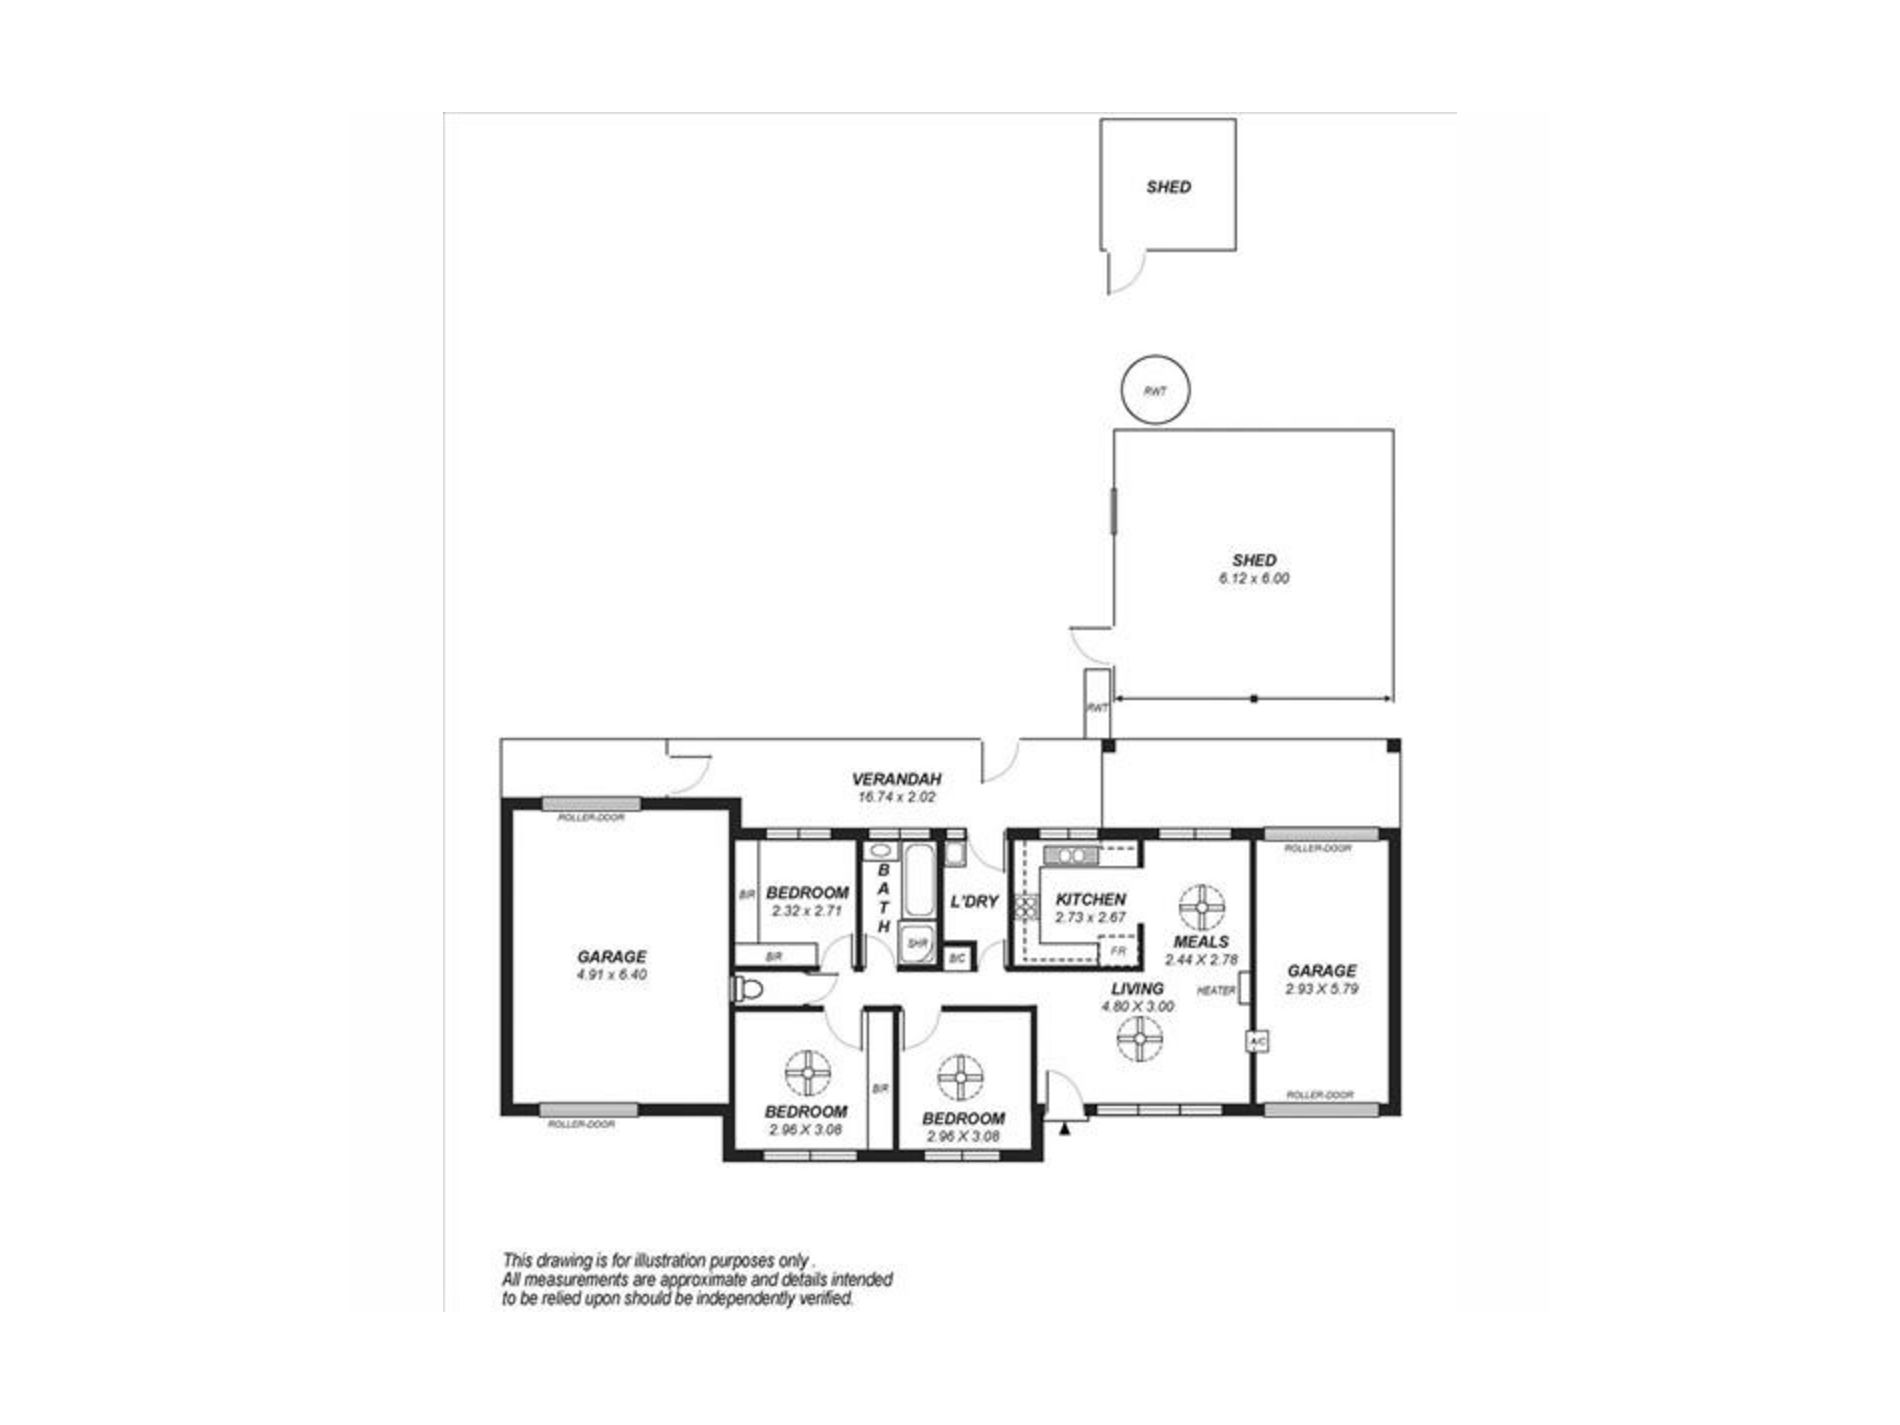 41 Berryman Avenue, Mannum Floor Plan